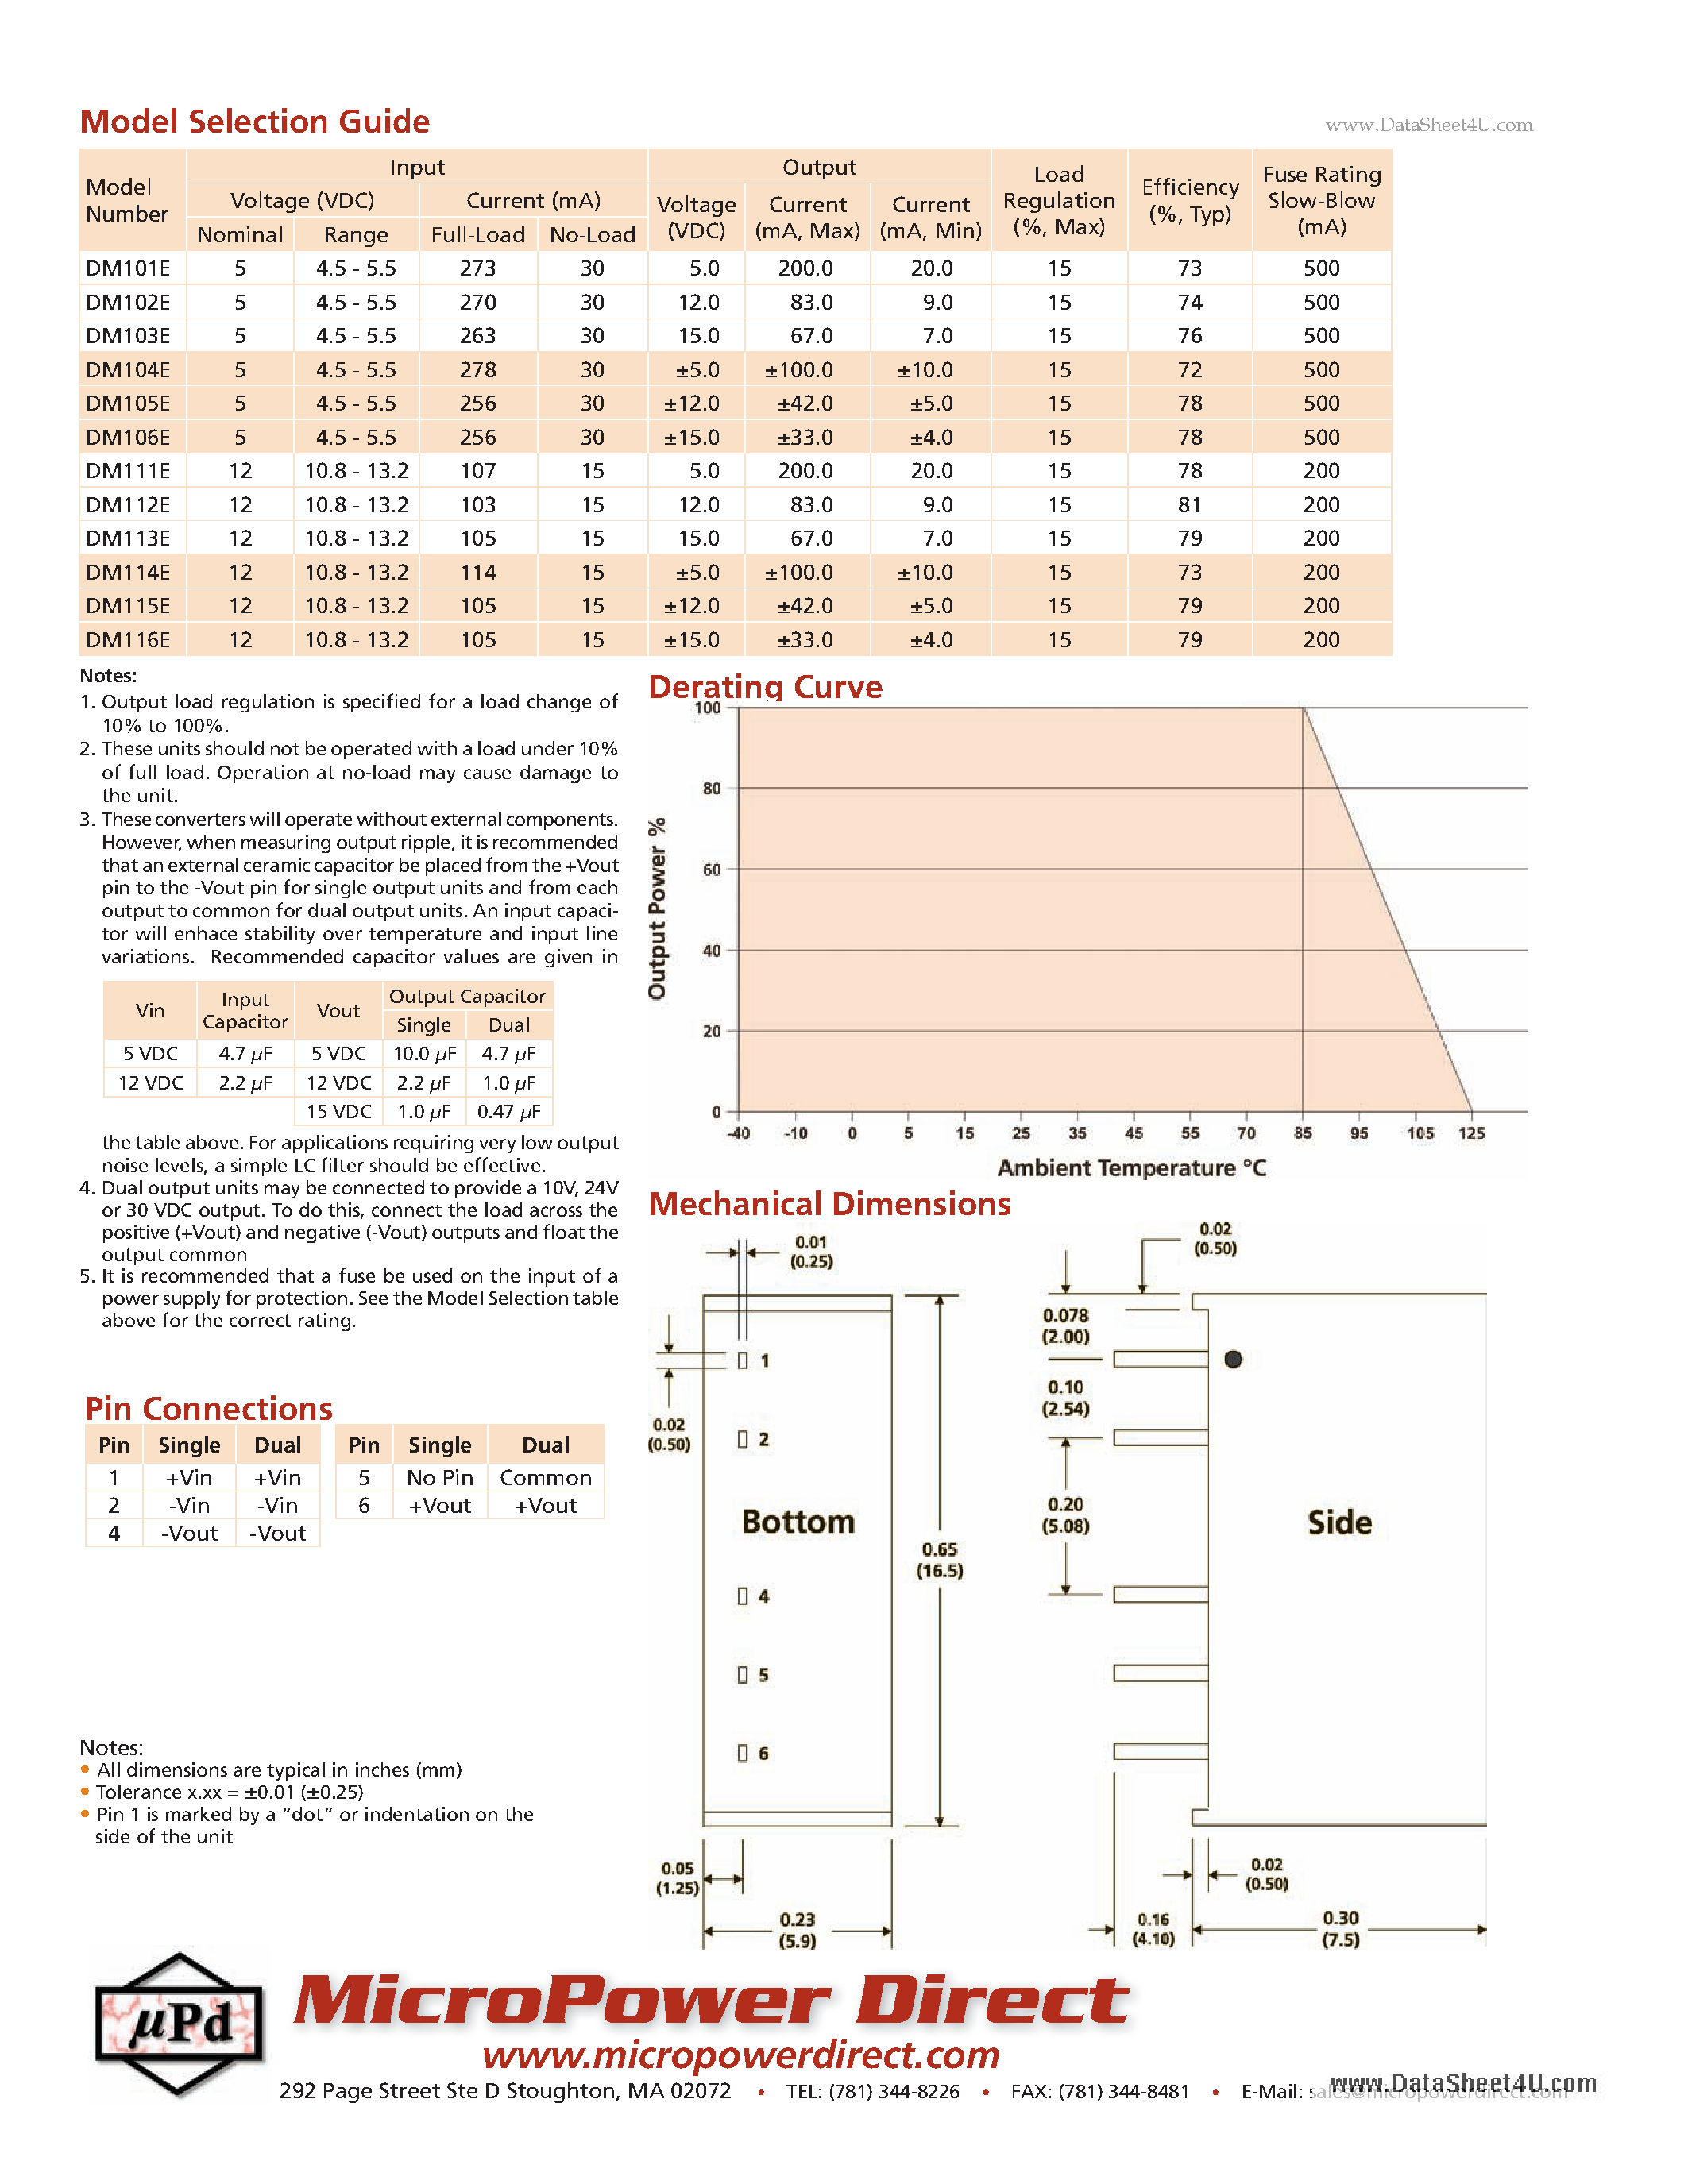 Даташит DM100E - 1W SIP Single & Dual Output DC/DC Converters страница 2